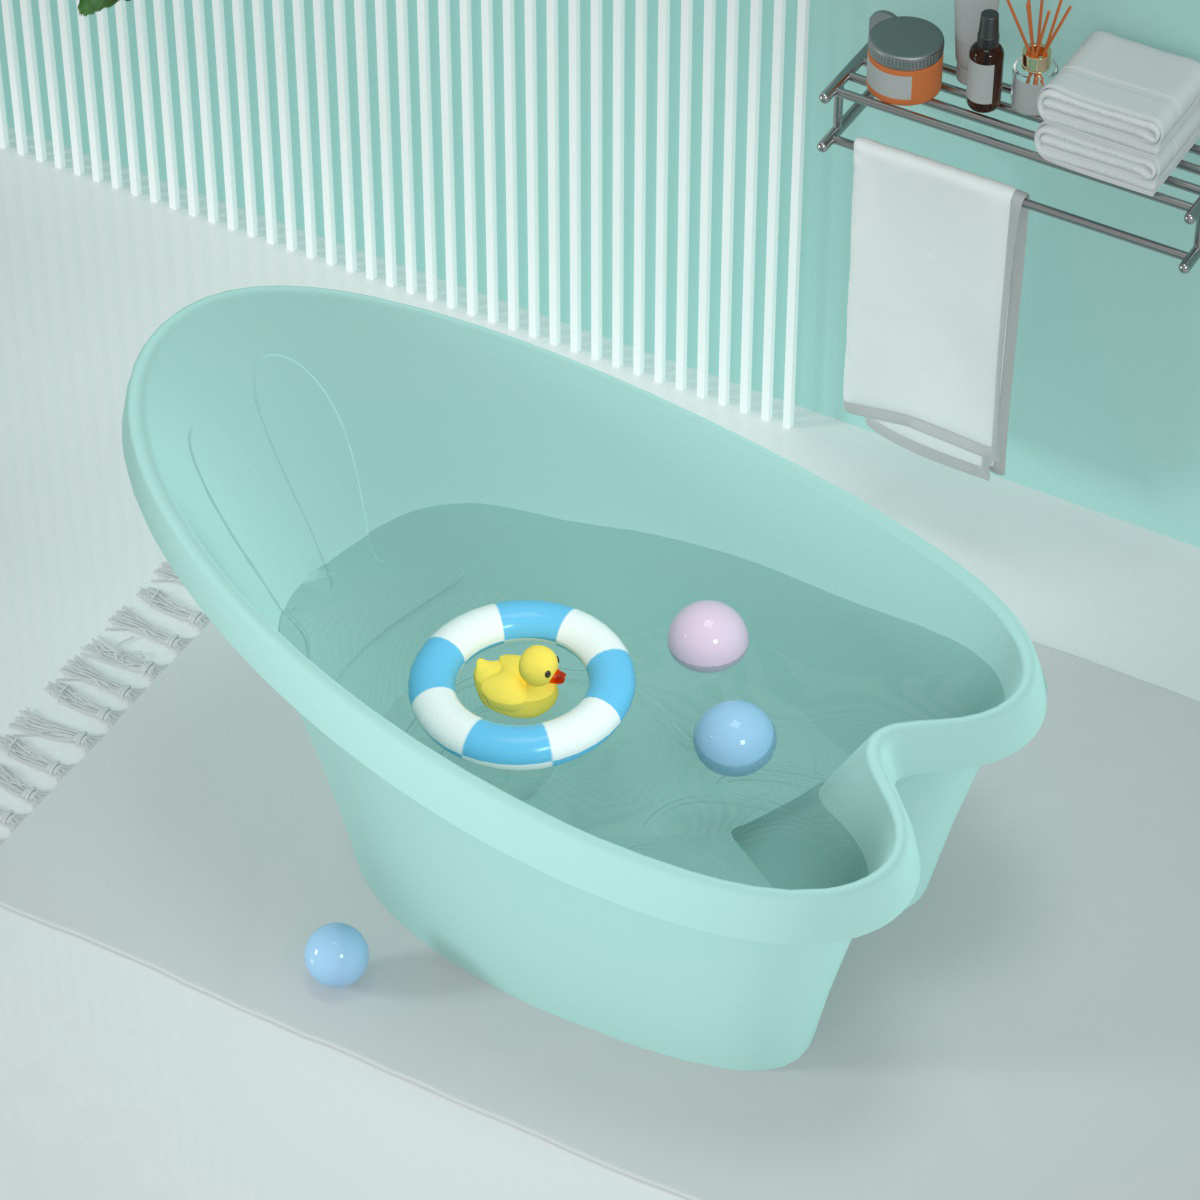 Rabbit Design Baby Bathtub Bathroom Kids Bathtub Newborn To Toddler Children Bath Tub For Baby Shower